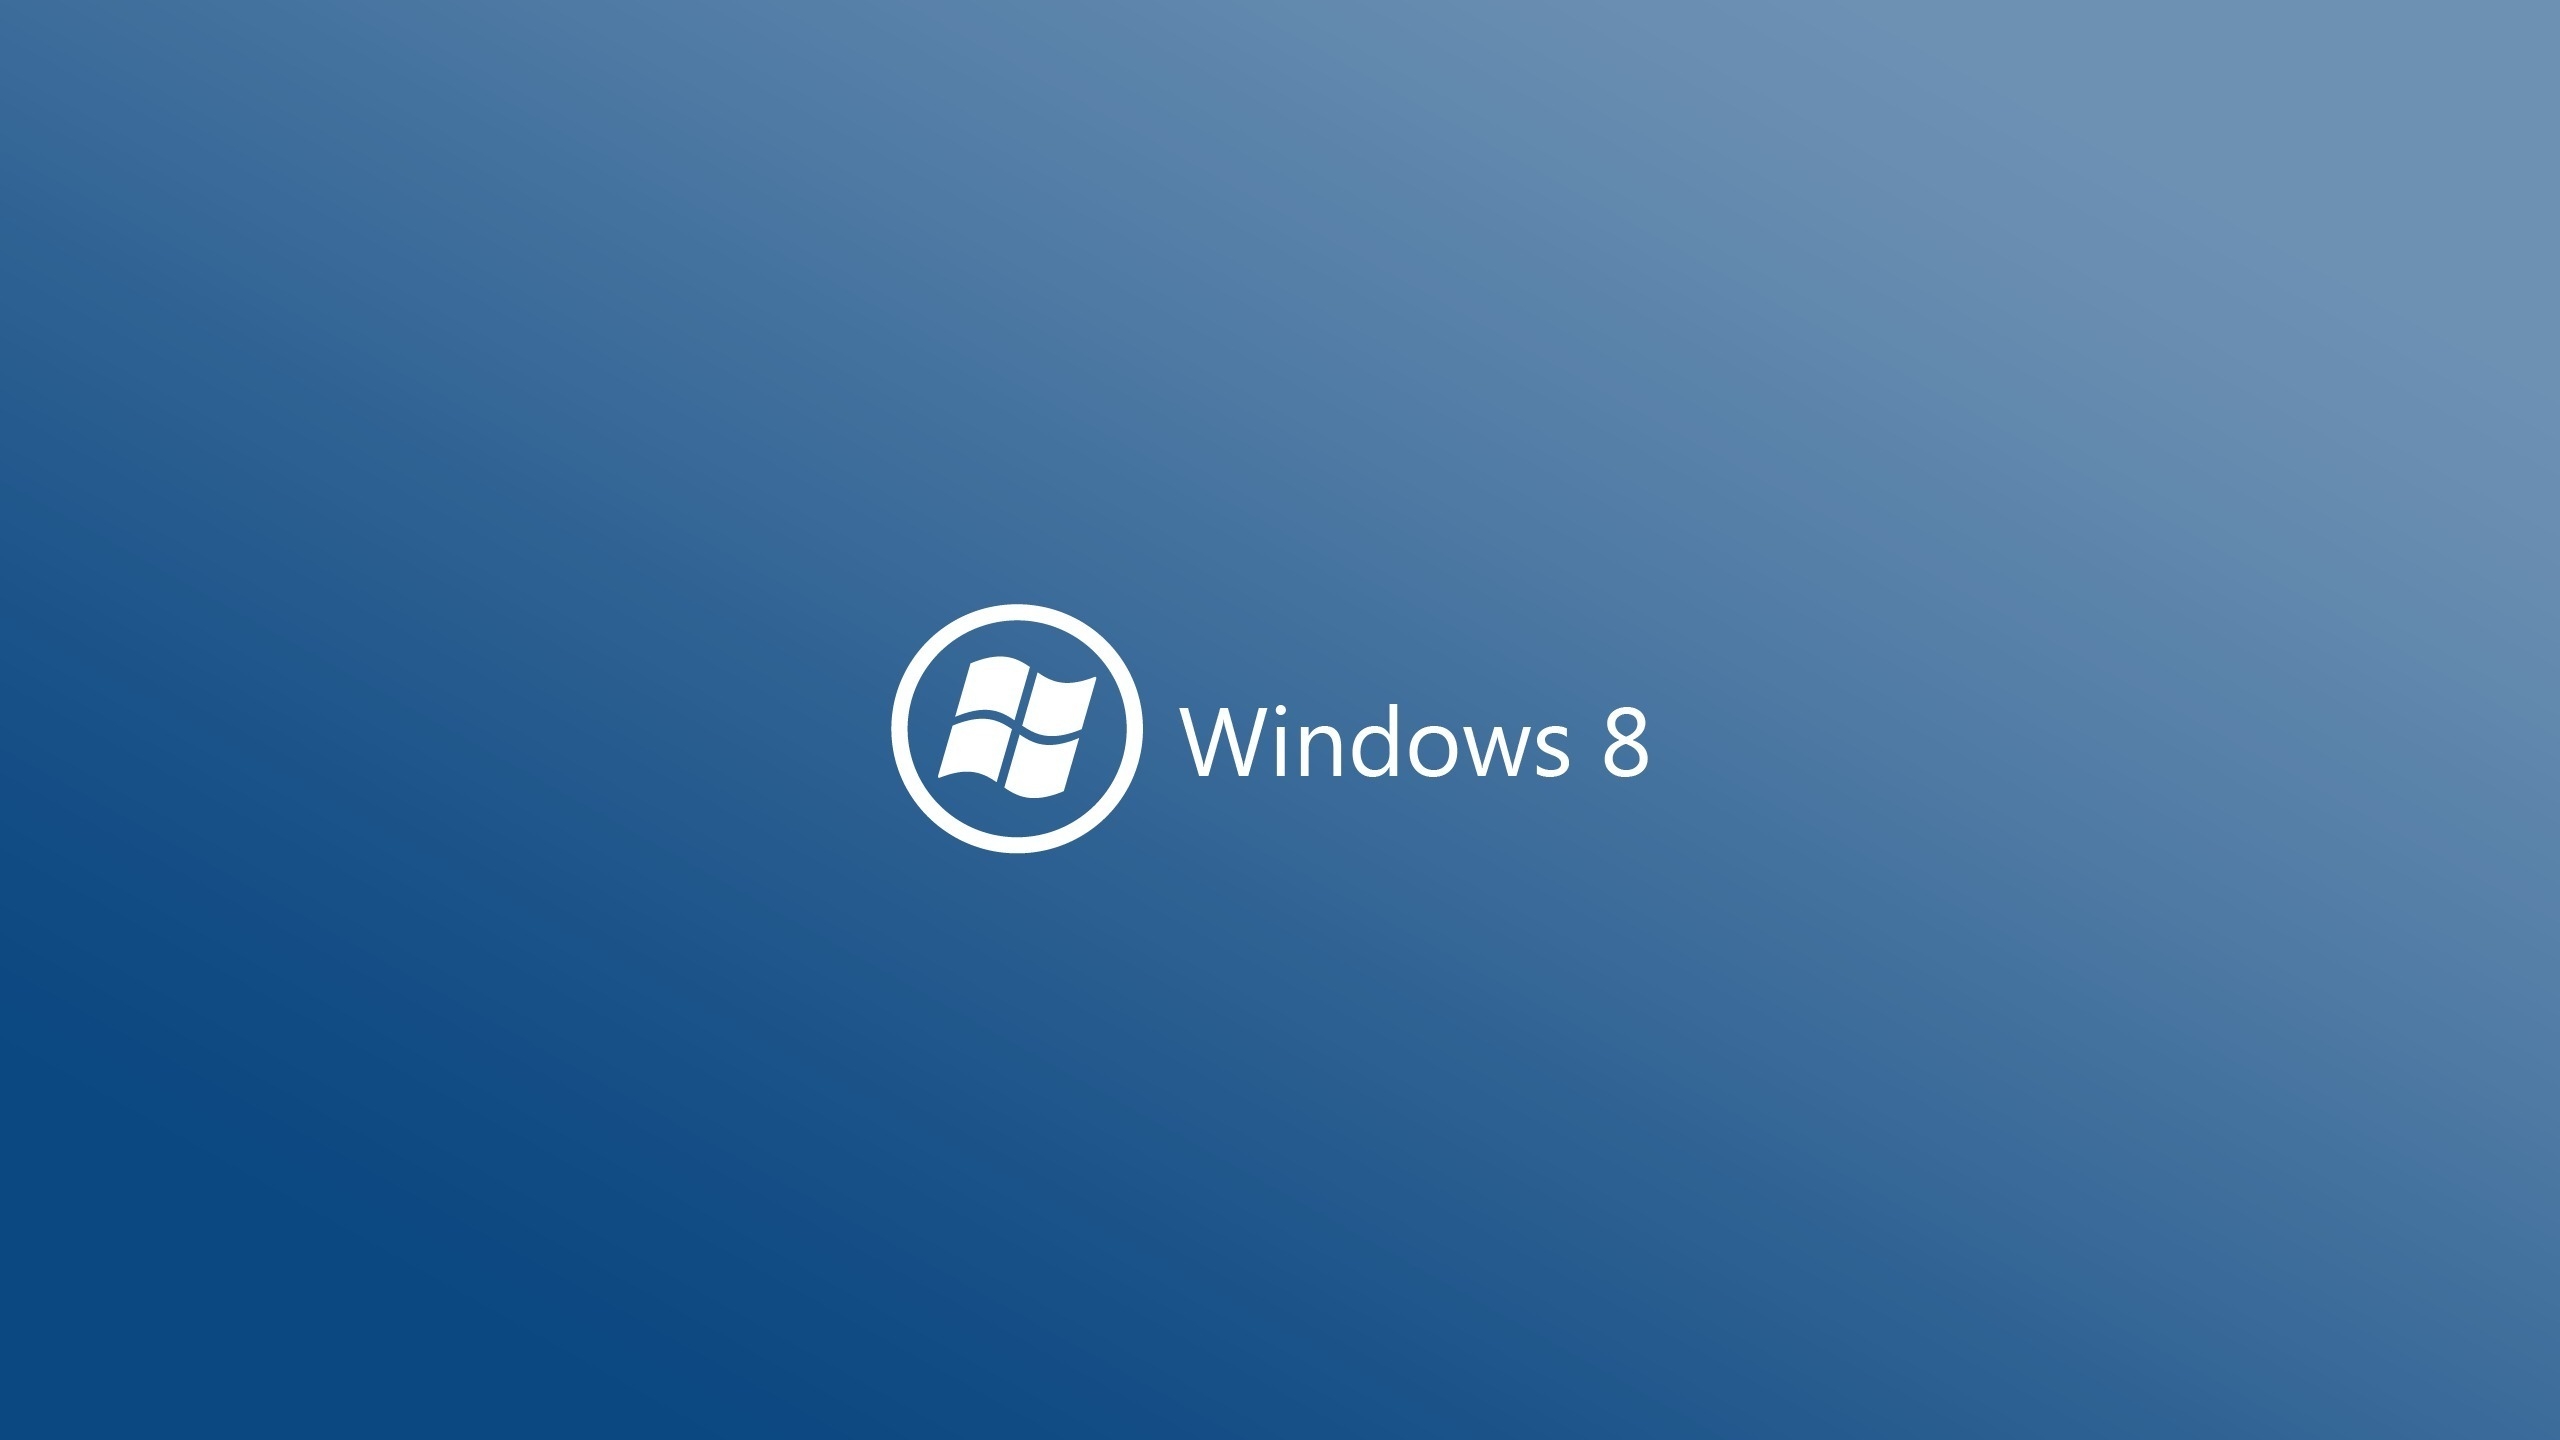 Windows 8 Logo for 2560x1440 HDTV resolution